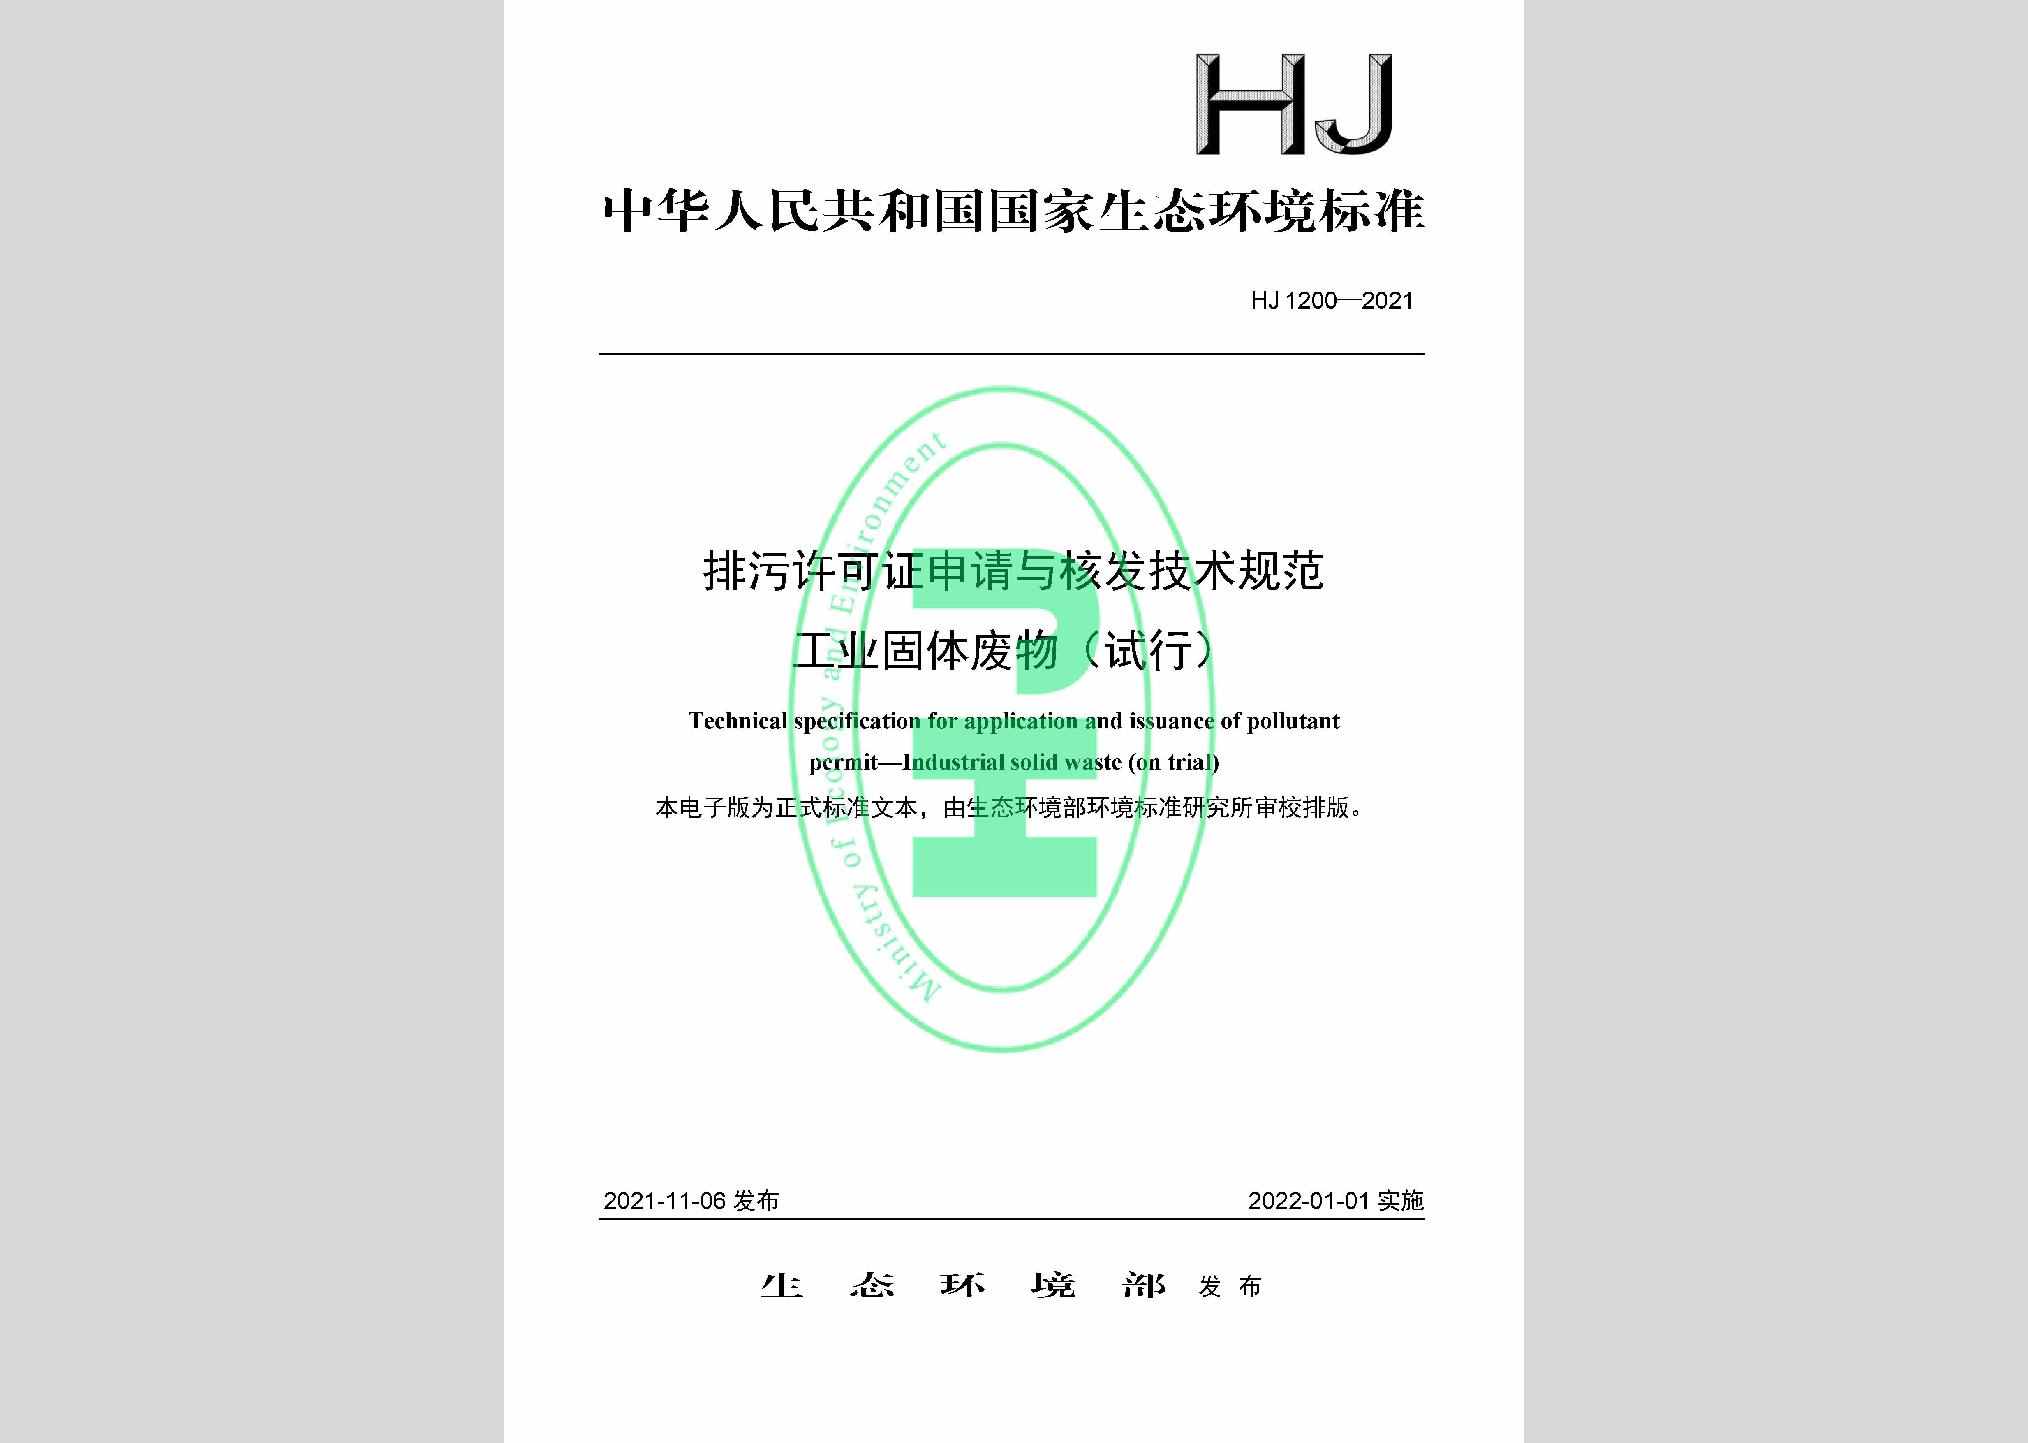 HJ1200-2021：排污许可证申请与核发技术规范工业固体废物（试行）